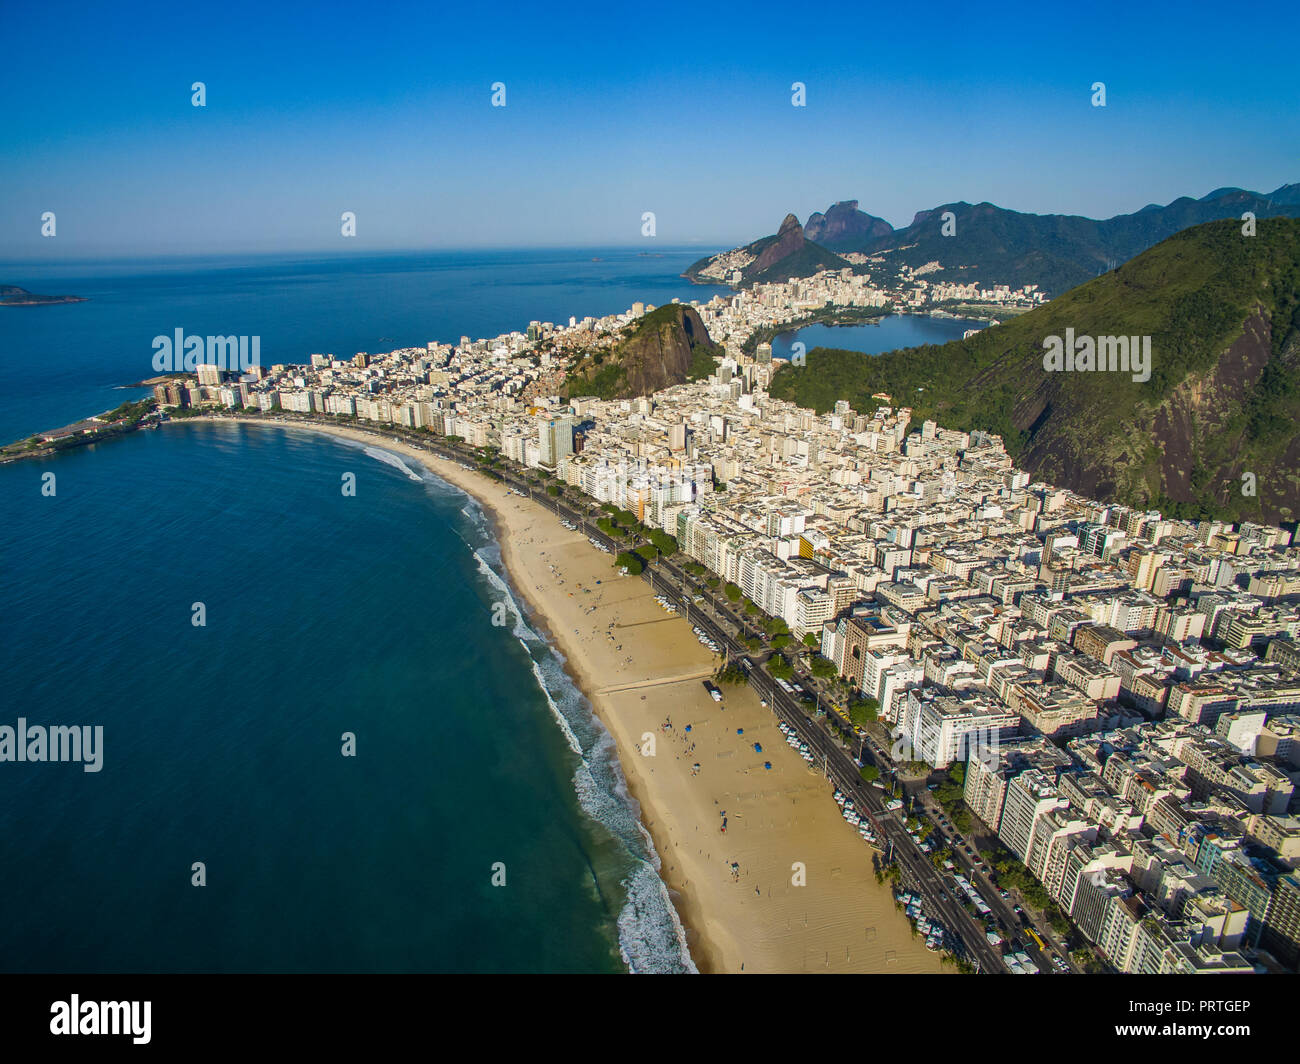 La plage de Copacabana dans quartier Copacabana, Rio de Janeiro, Brésil. L'Amérique du Sud. La plage la plus célèbre dans le monde entier. La ville magnifique. Banque D'Images